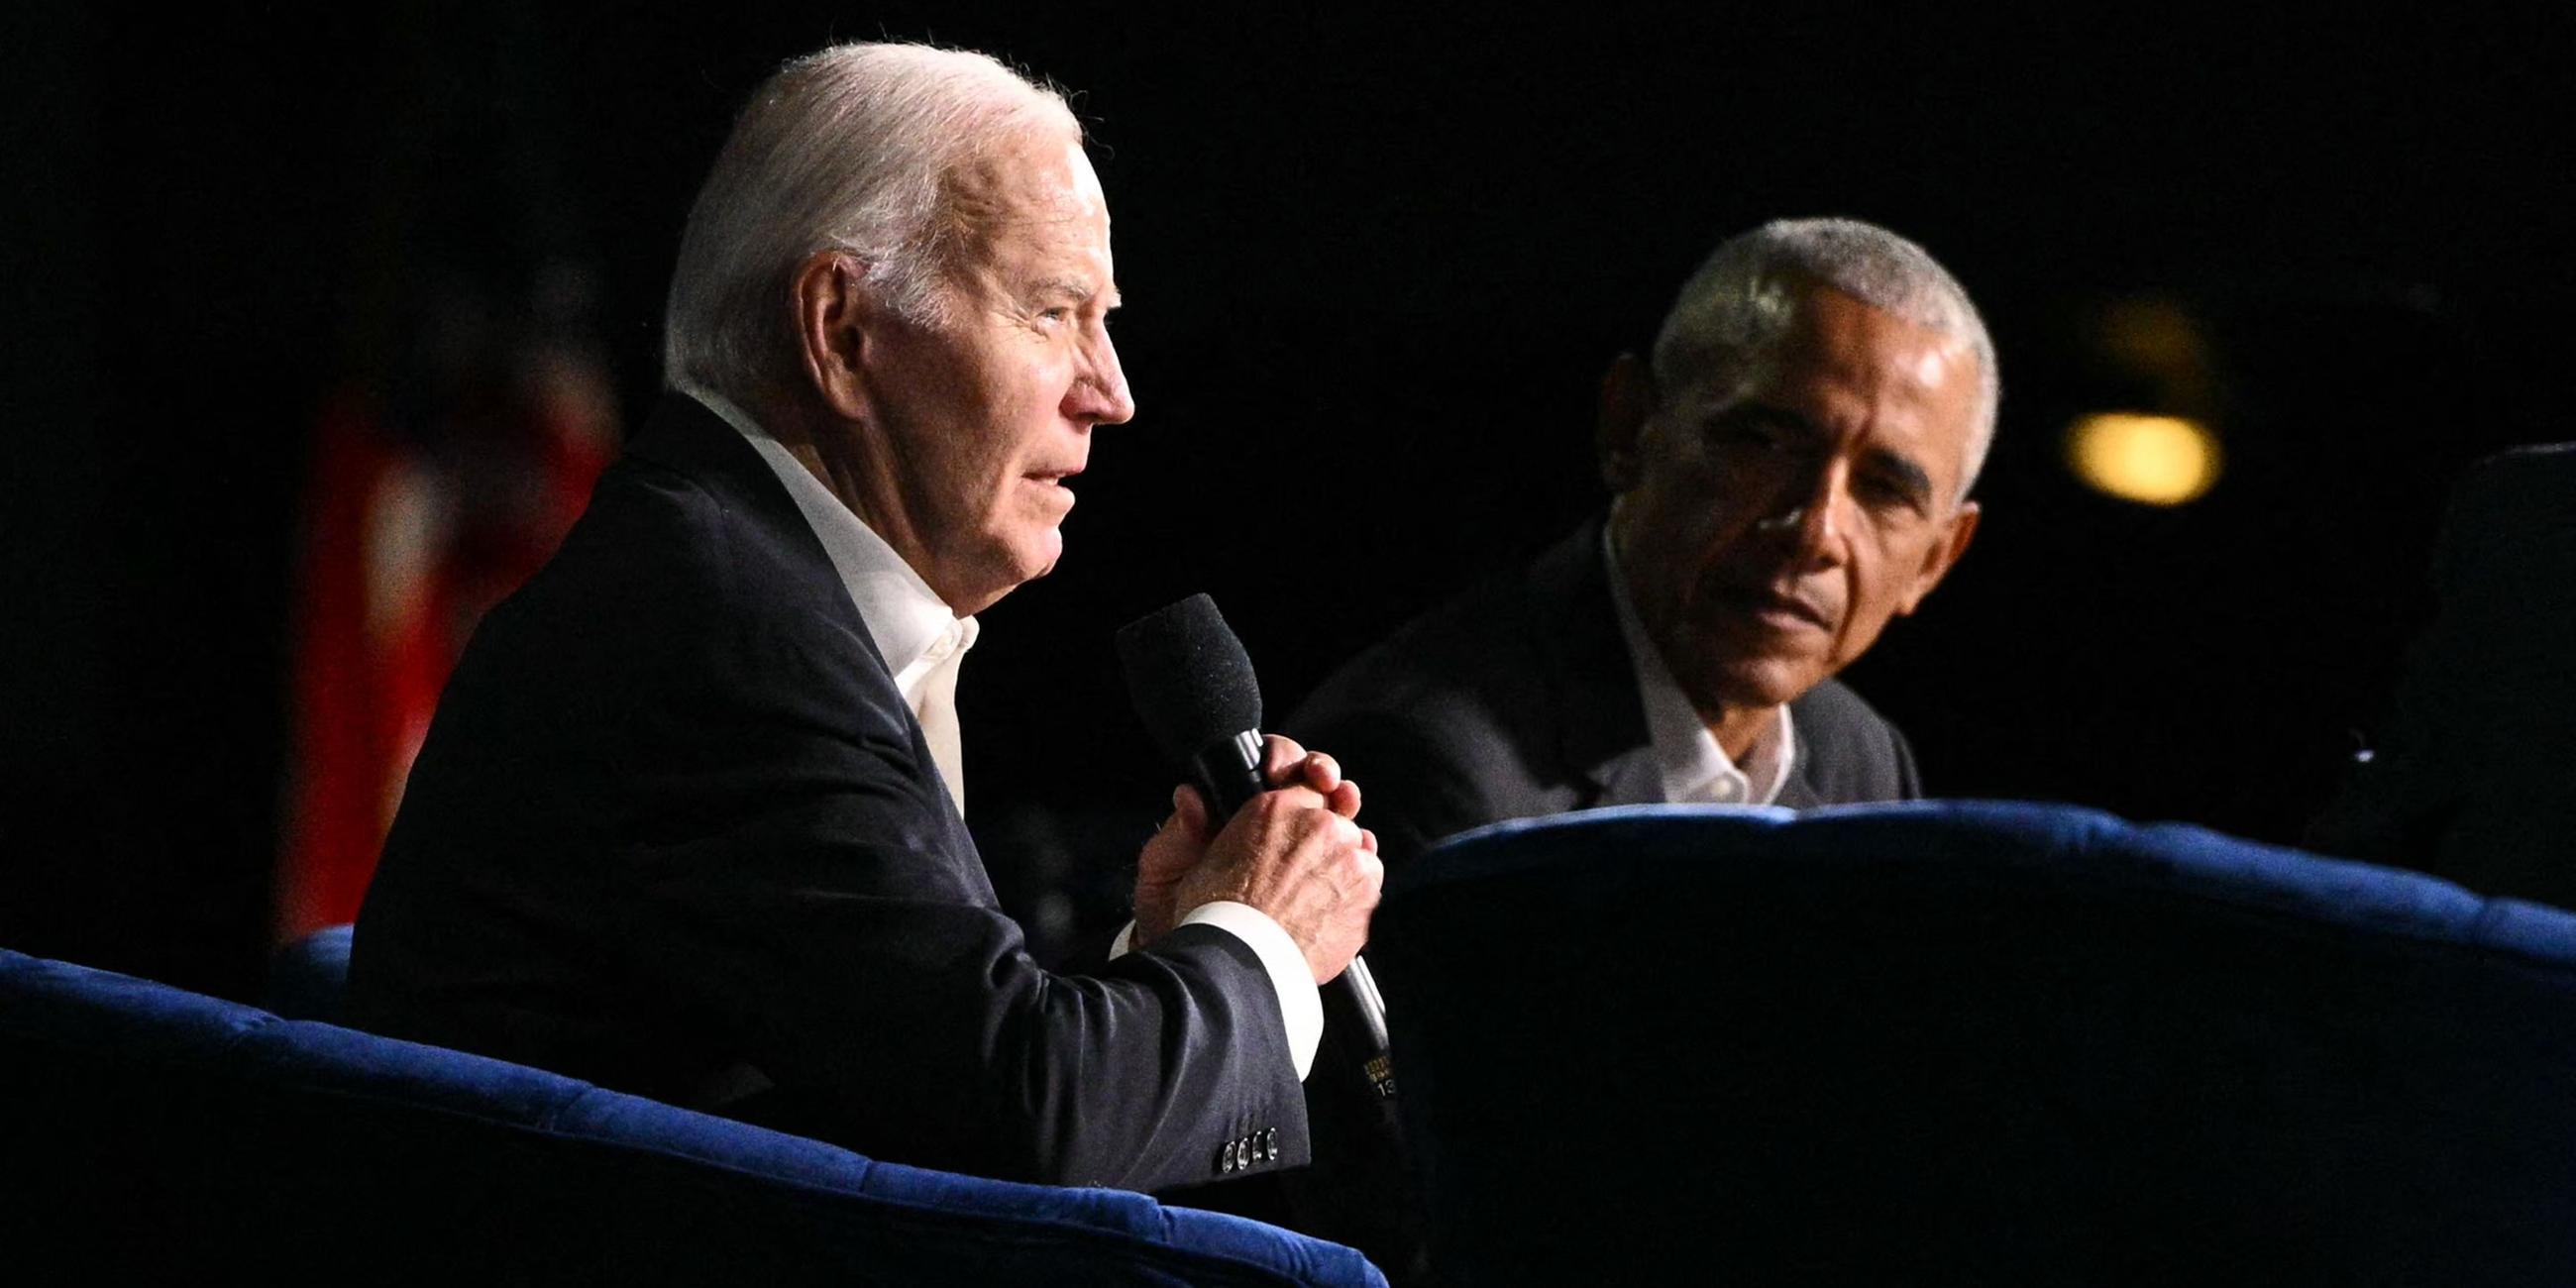 US-Präsident Joe Biden spricht auf einer Bühne neben dem ehemaligen US-Präsidenten Barack Obama.